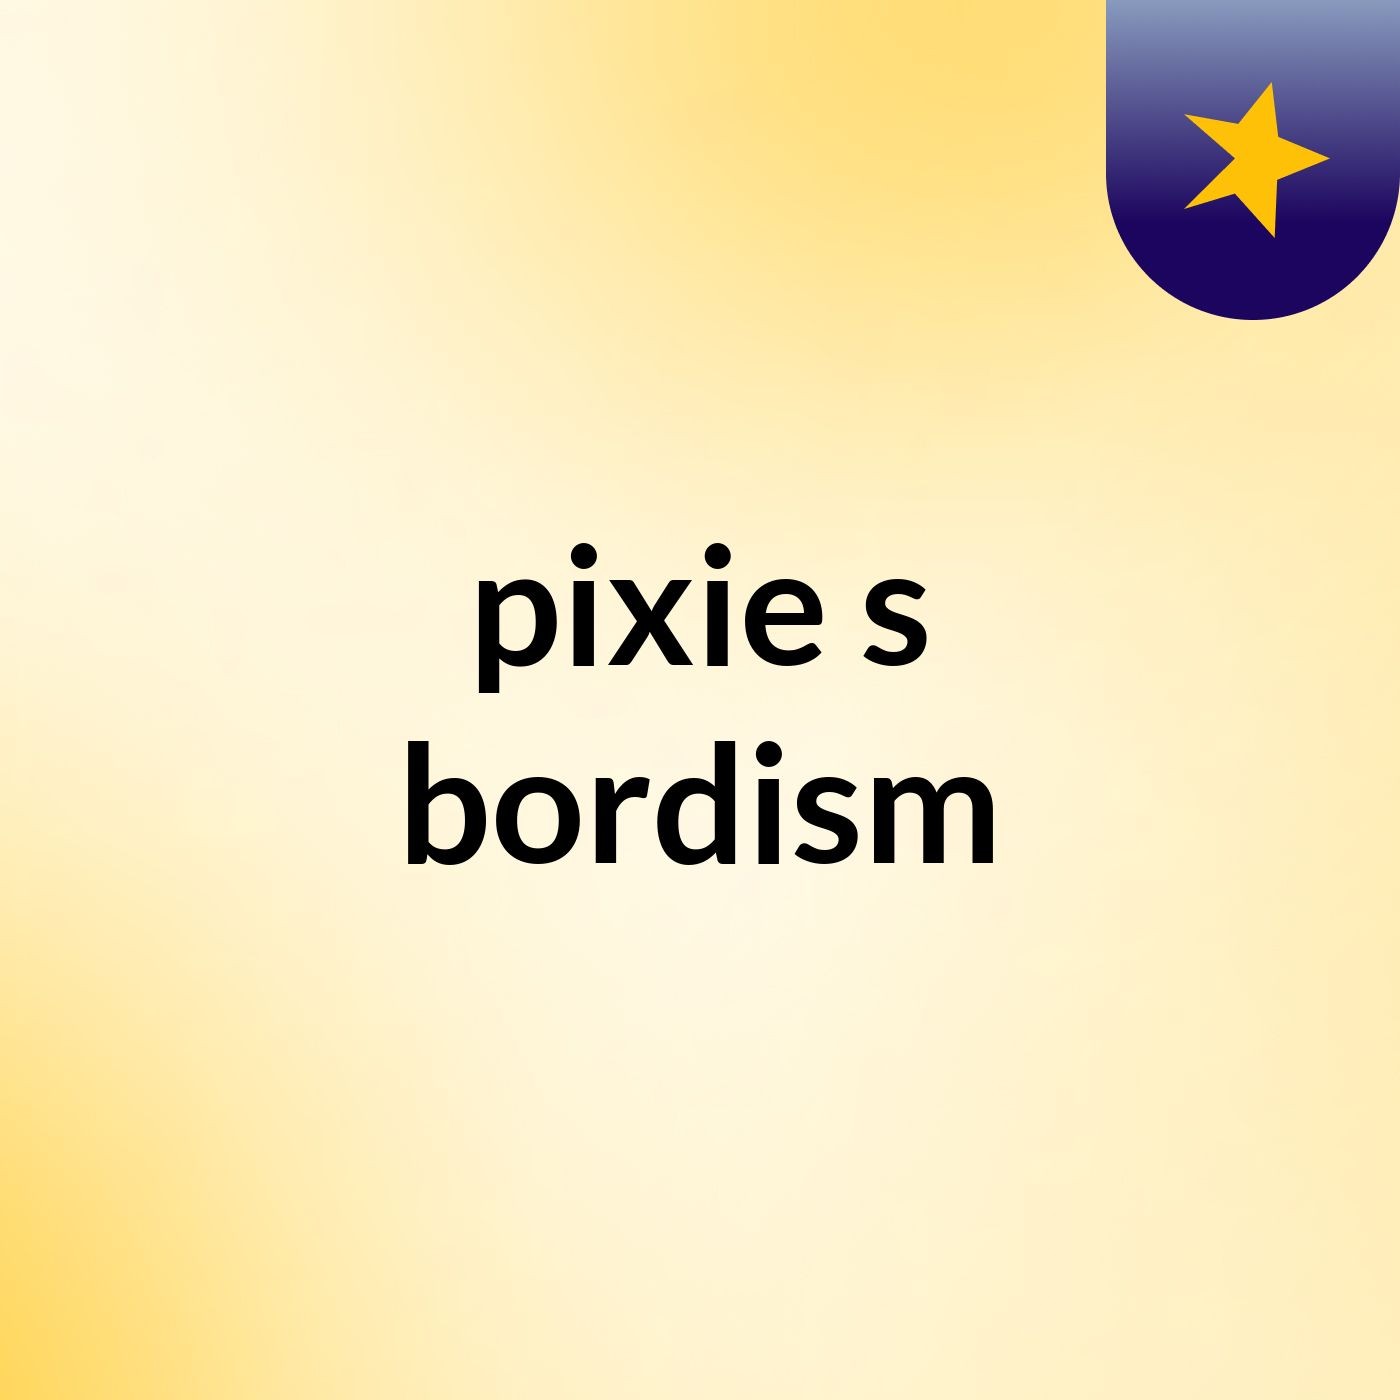 pixie's bordism